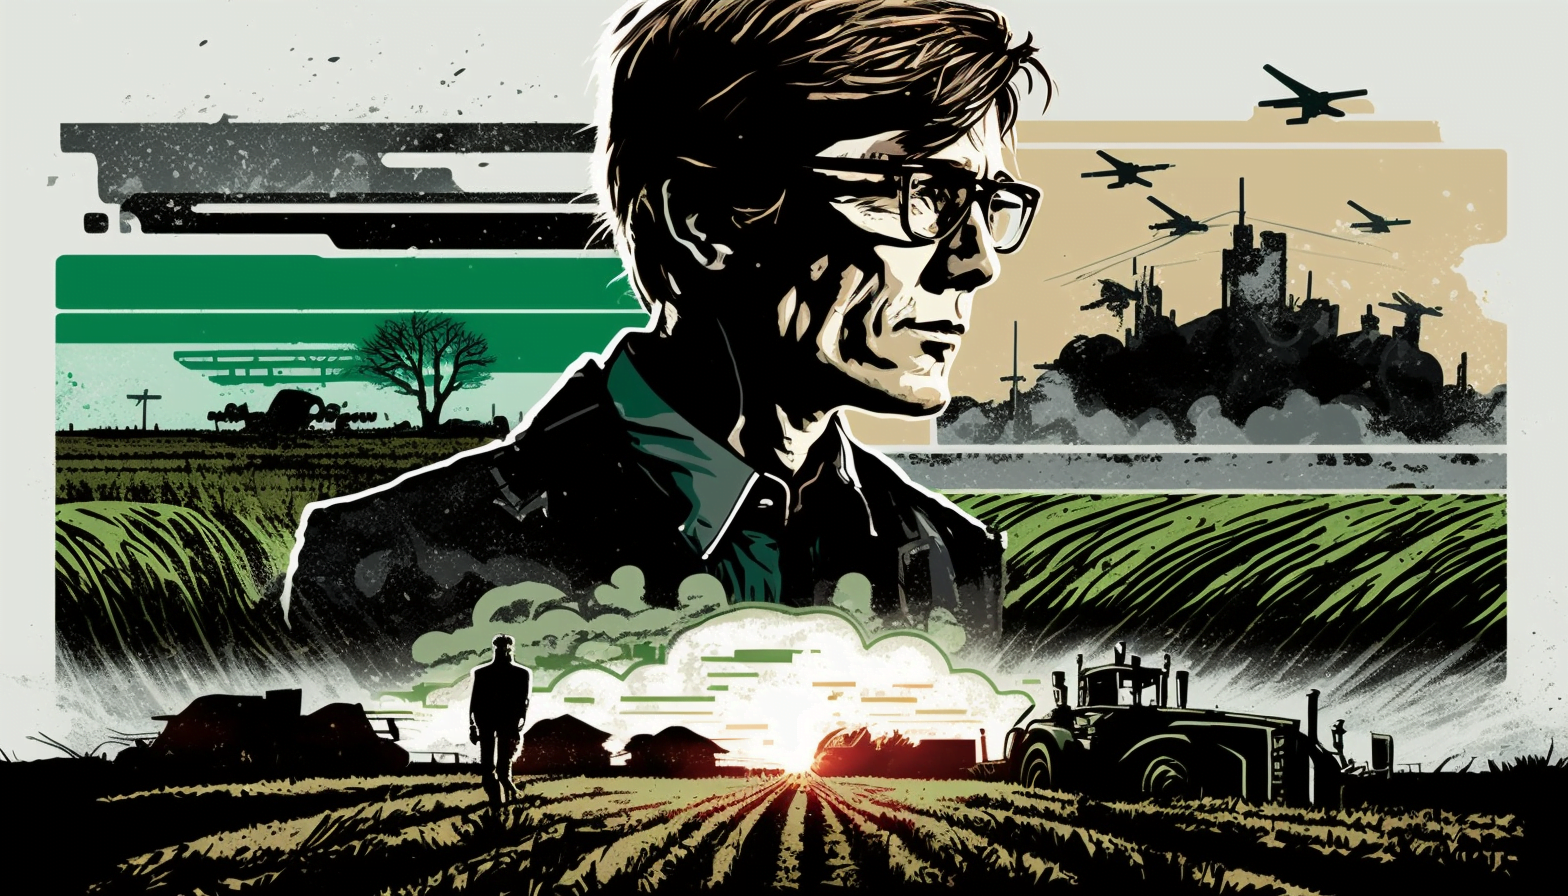 Avslöjandet av strategin: Varför investerar Bill Gates massivt i jordbruksmark?